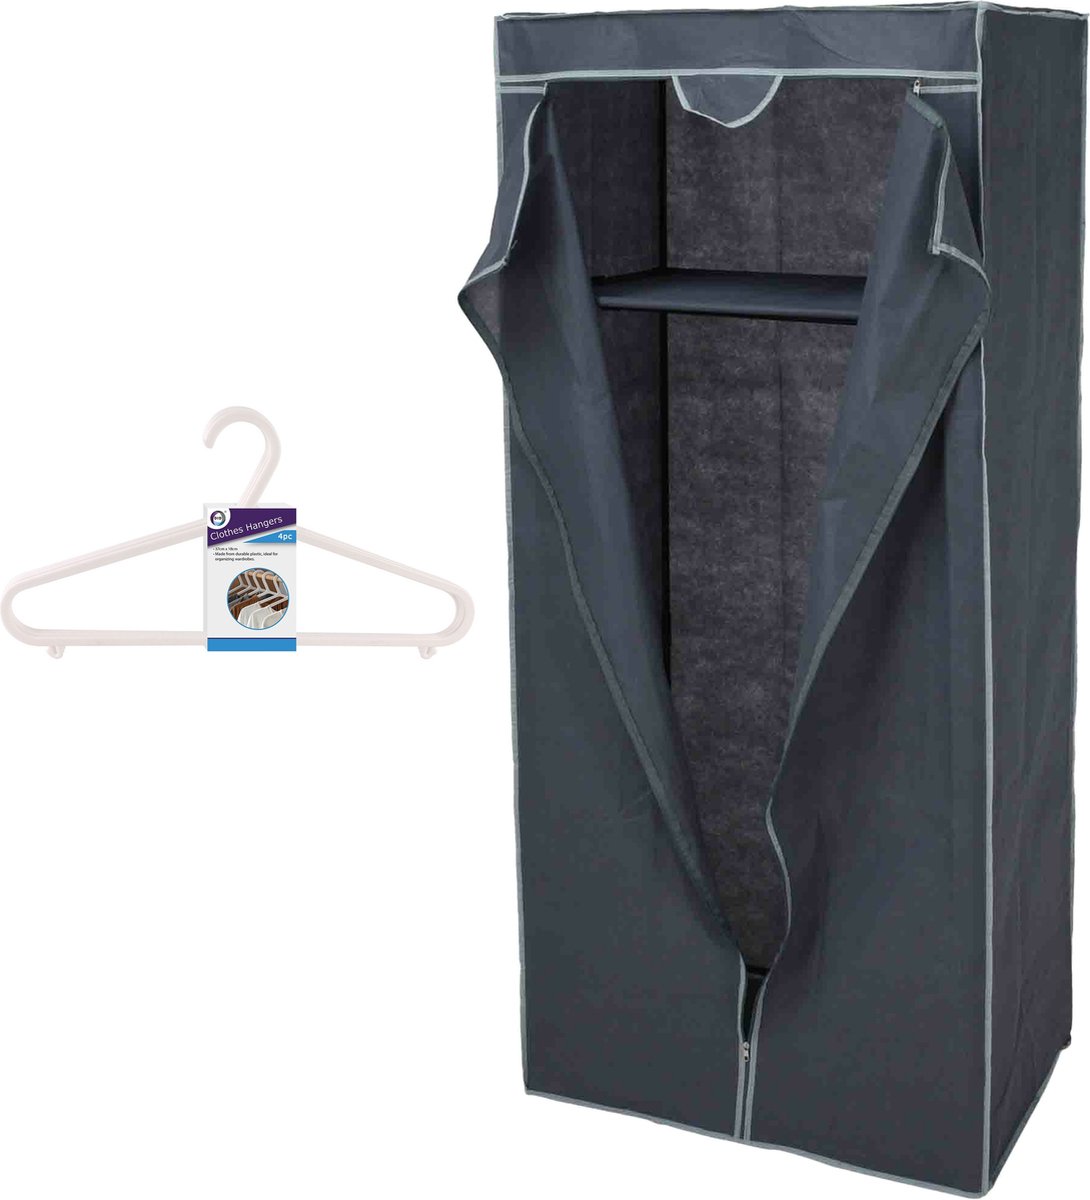 Storage Solutions - Mobiele kledingkast met 12x hangers - 75 x 160 cm